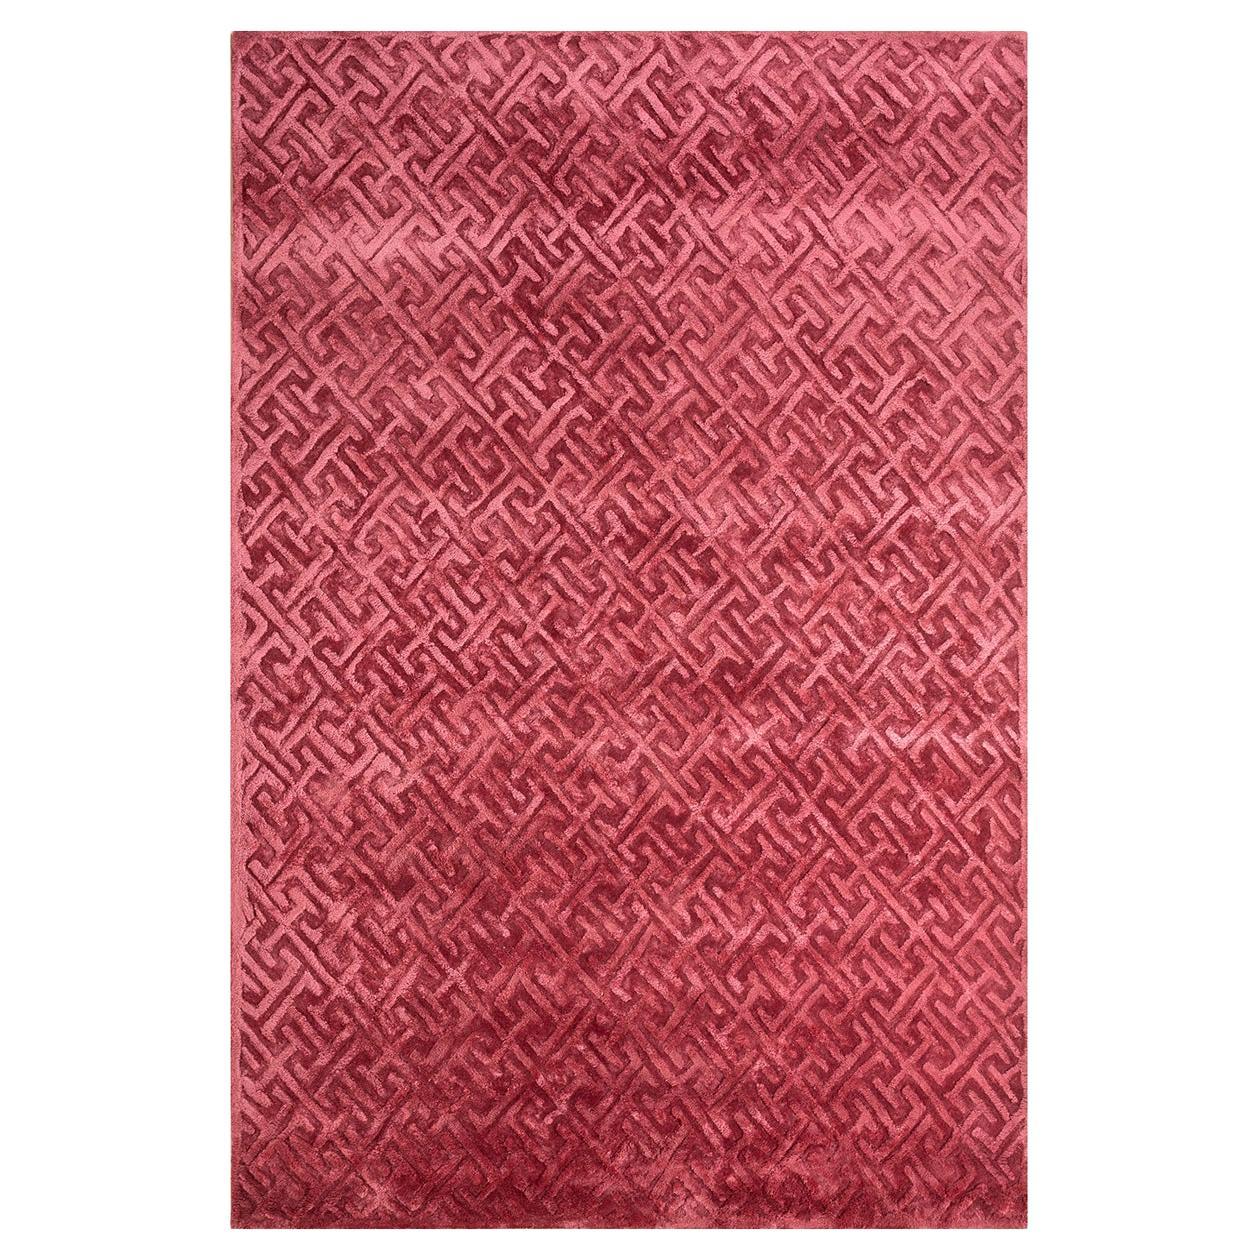 Tapis d'Angleterre des tisserands rurals, touffeté, laine, viscose, 180 x 270 cm